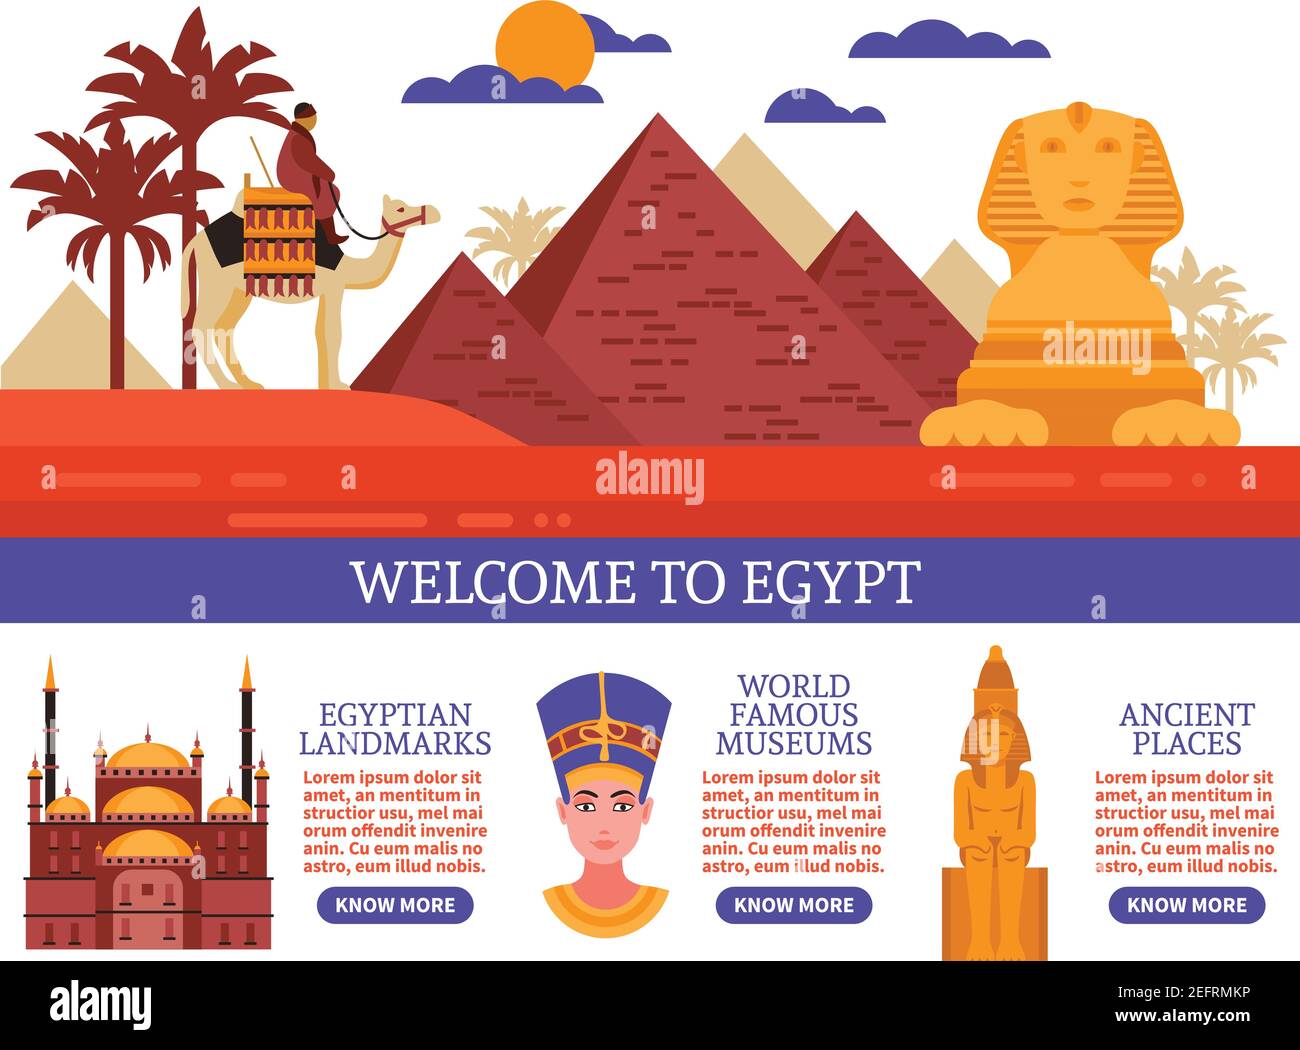 Ägypten Reise flache Vektor-Illustration mit Einladung zu ägyptischen besuchen Wahrzeichen berühmte Museen und antike Orte Stock Vektor